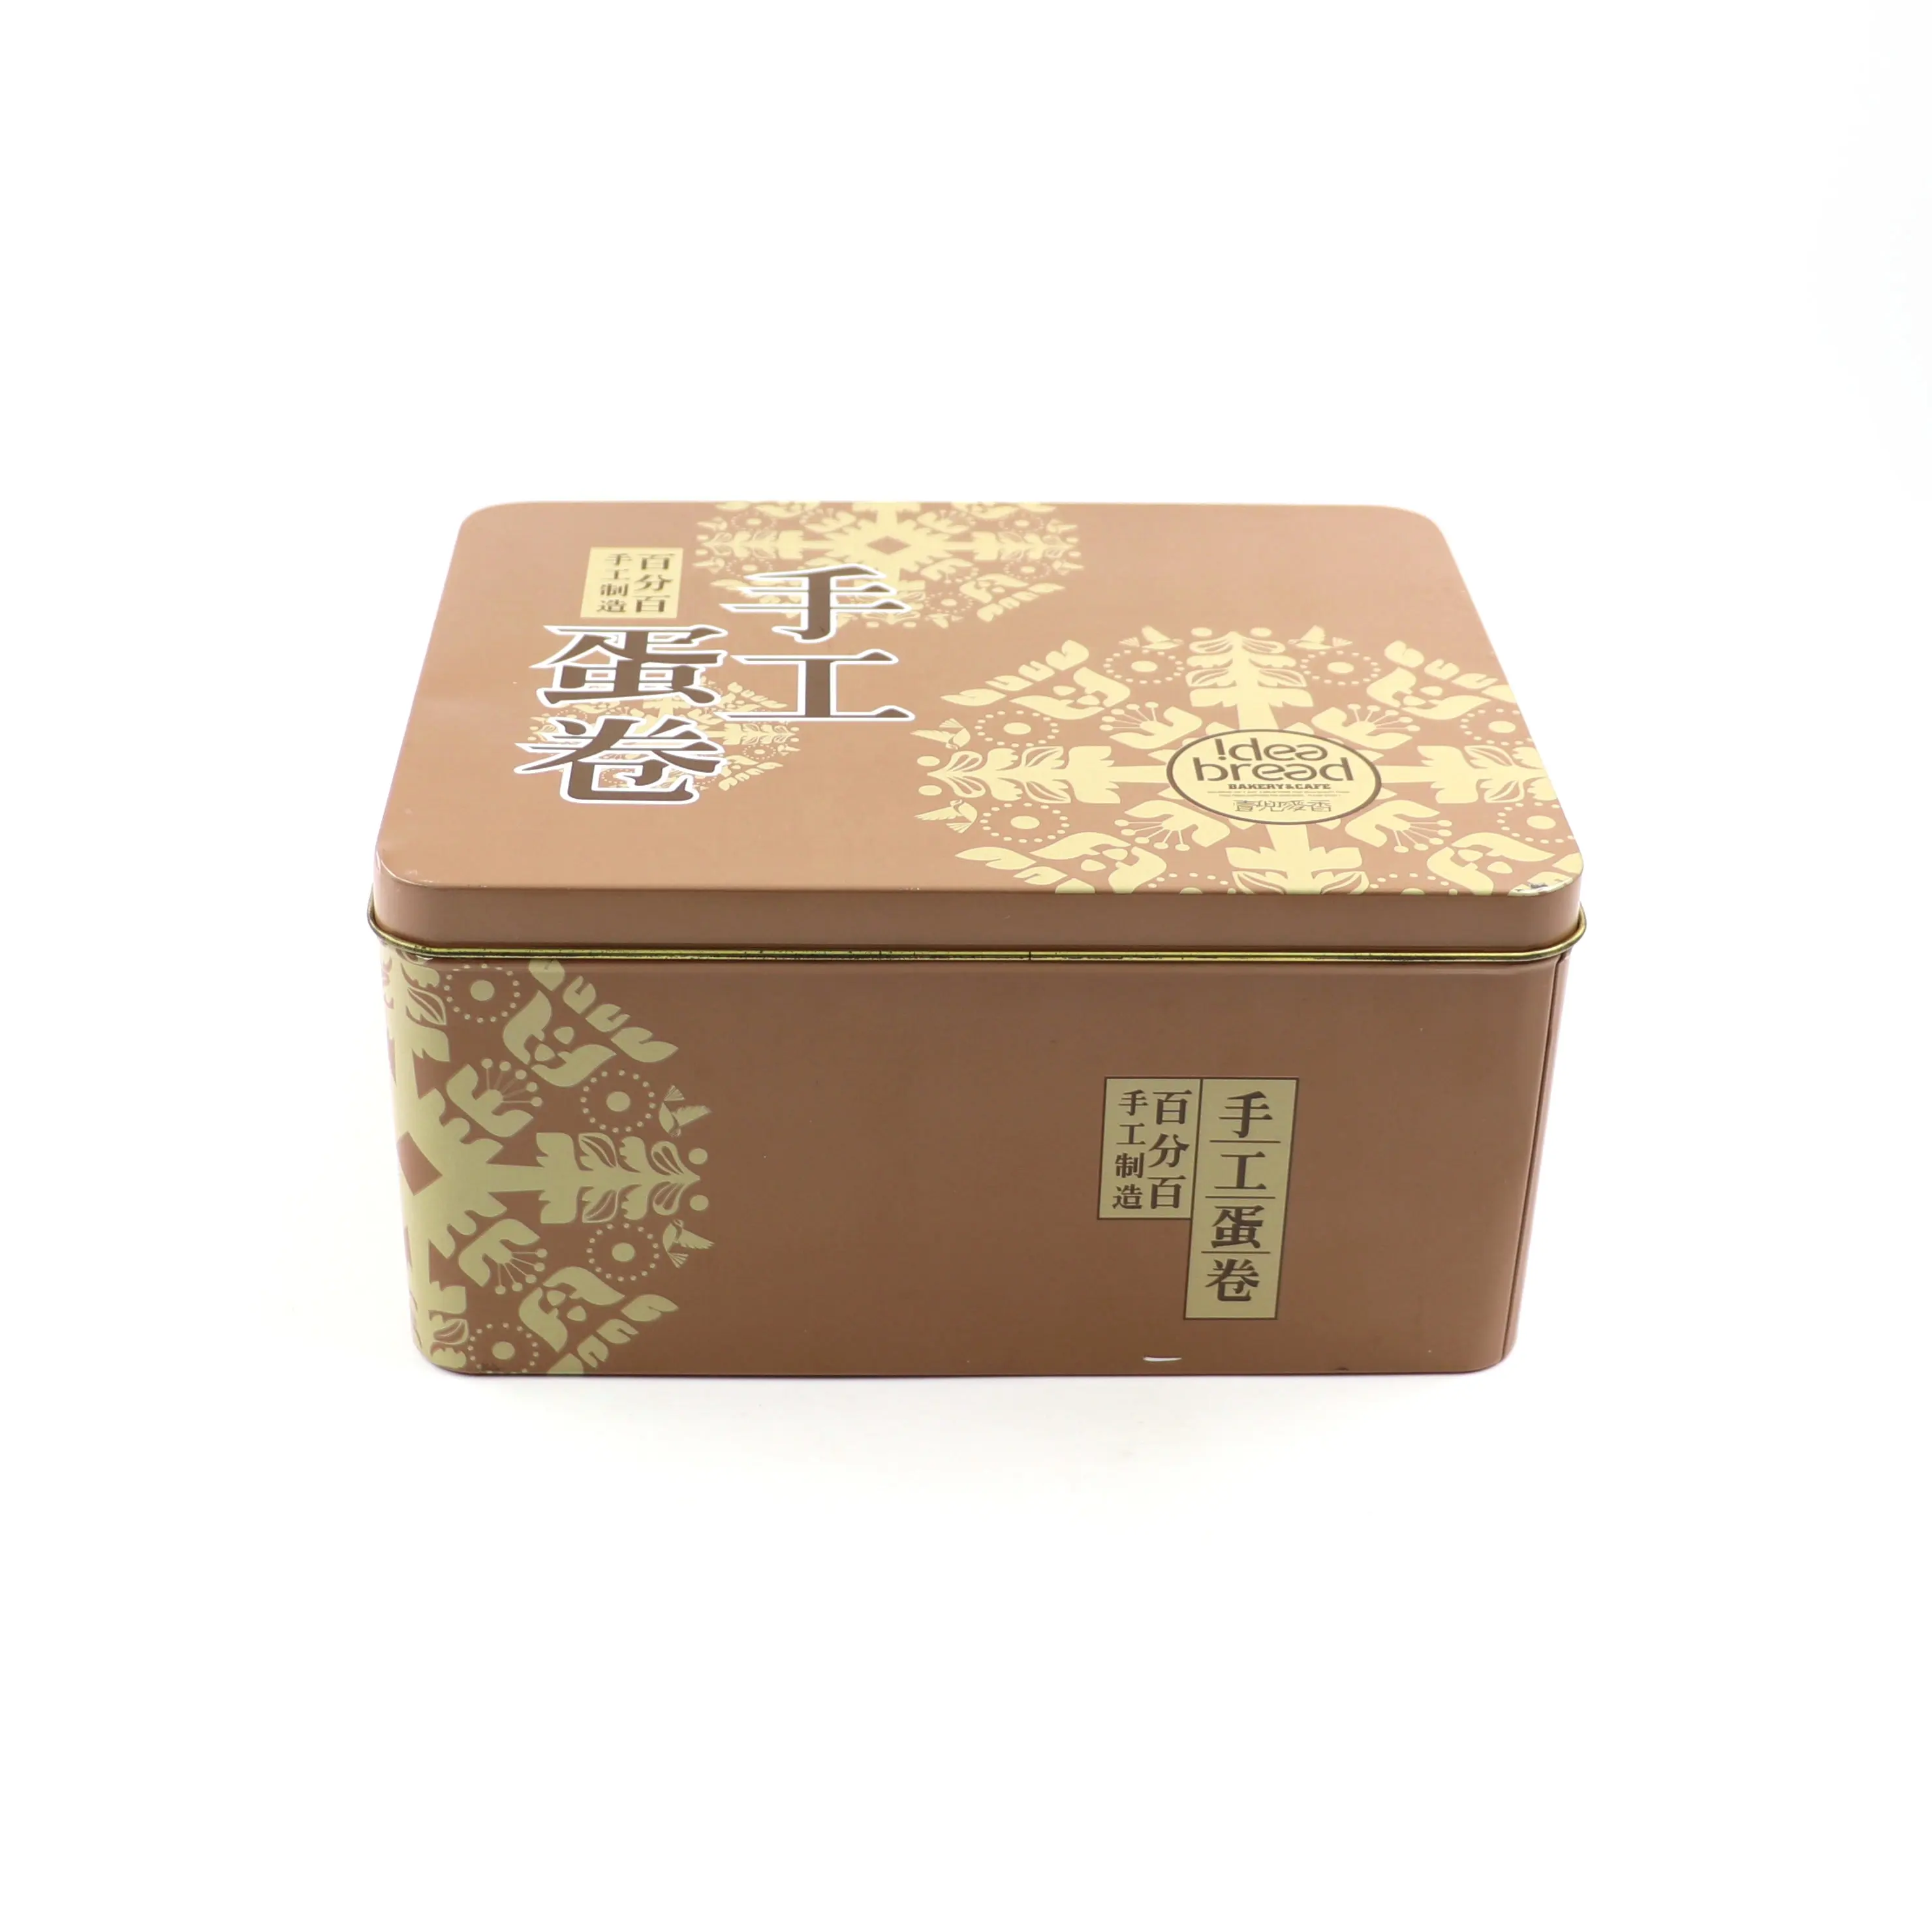 Großhandel kundenspezifische hochwertige Zinnbox Schokolade-Zinndosen in großen mengen große rechteckige Zinnplattenbehälter goldene Farbe mit Deckel